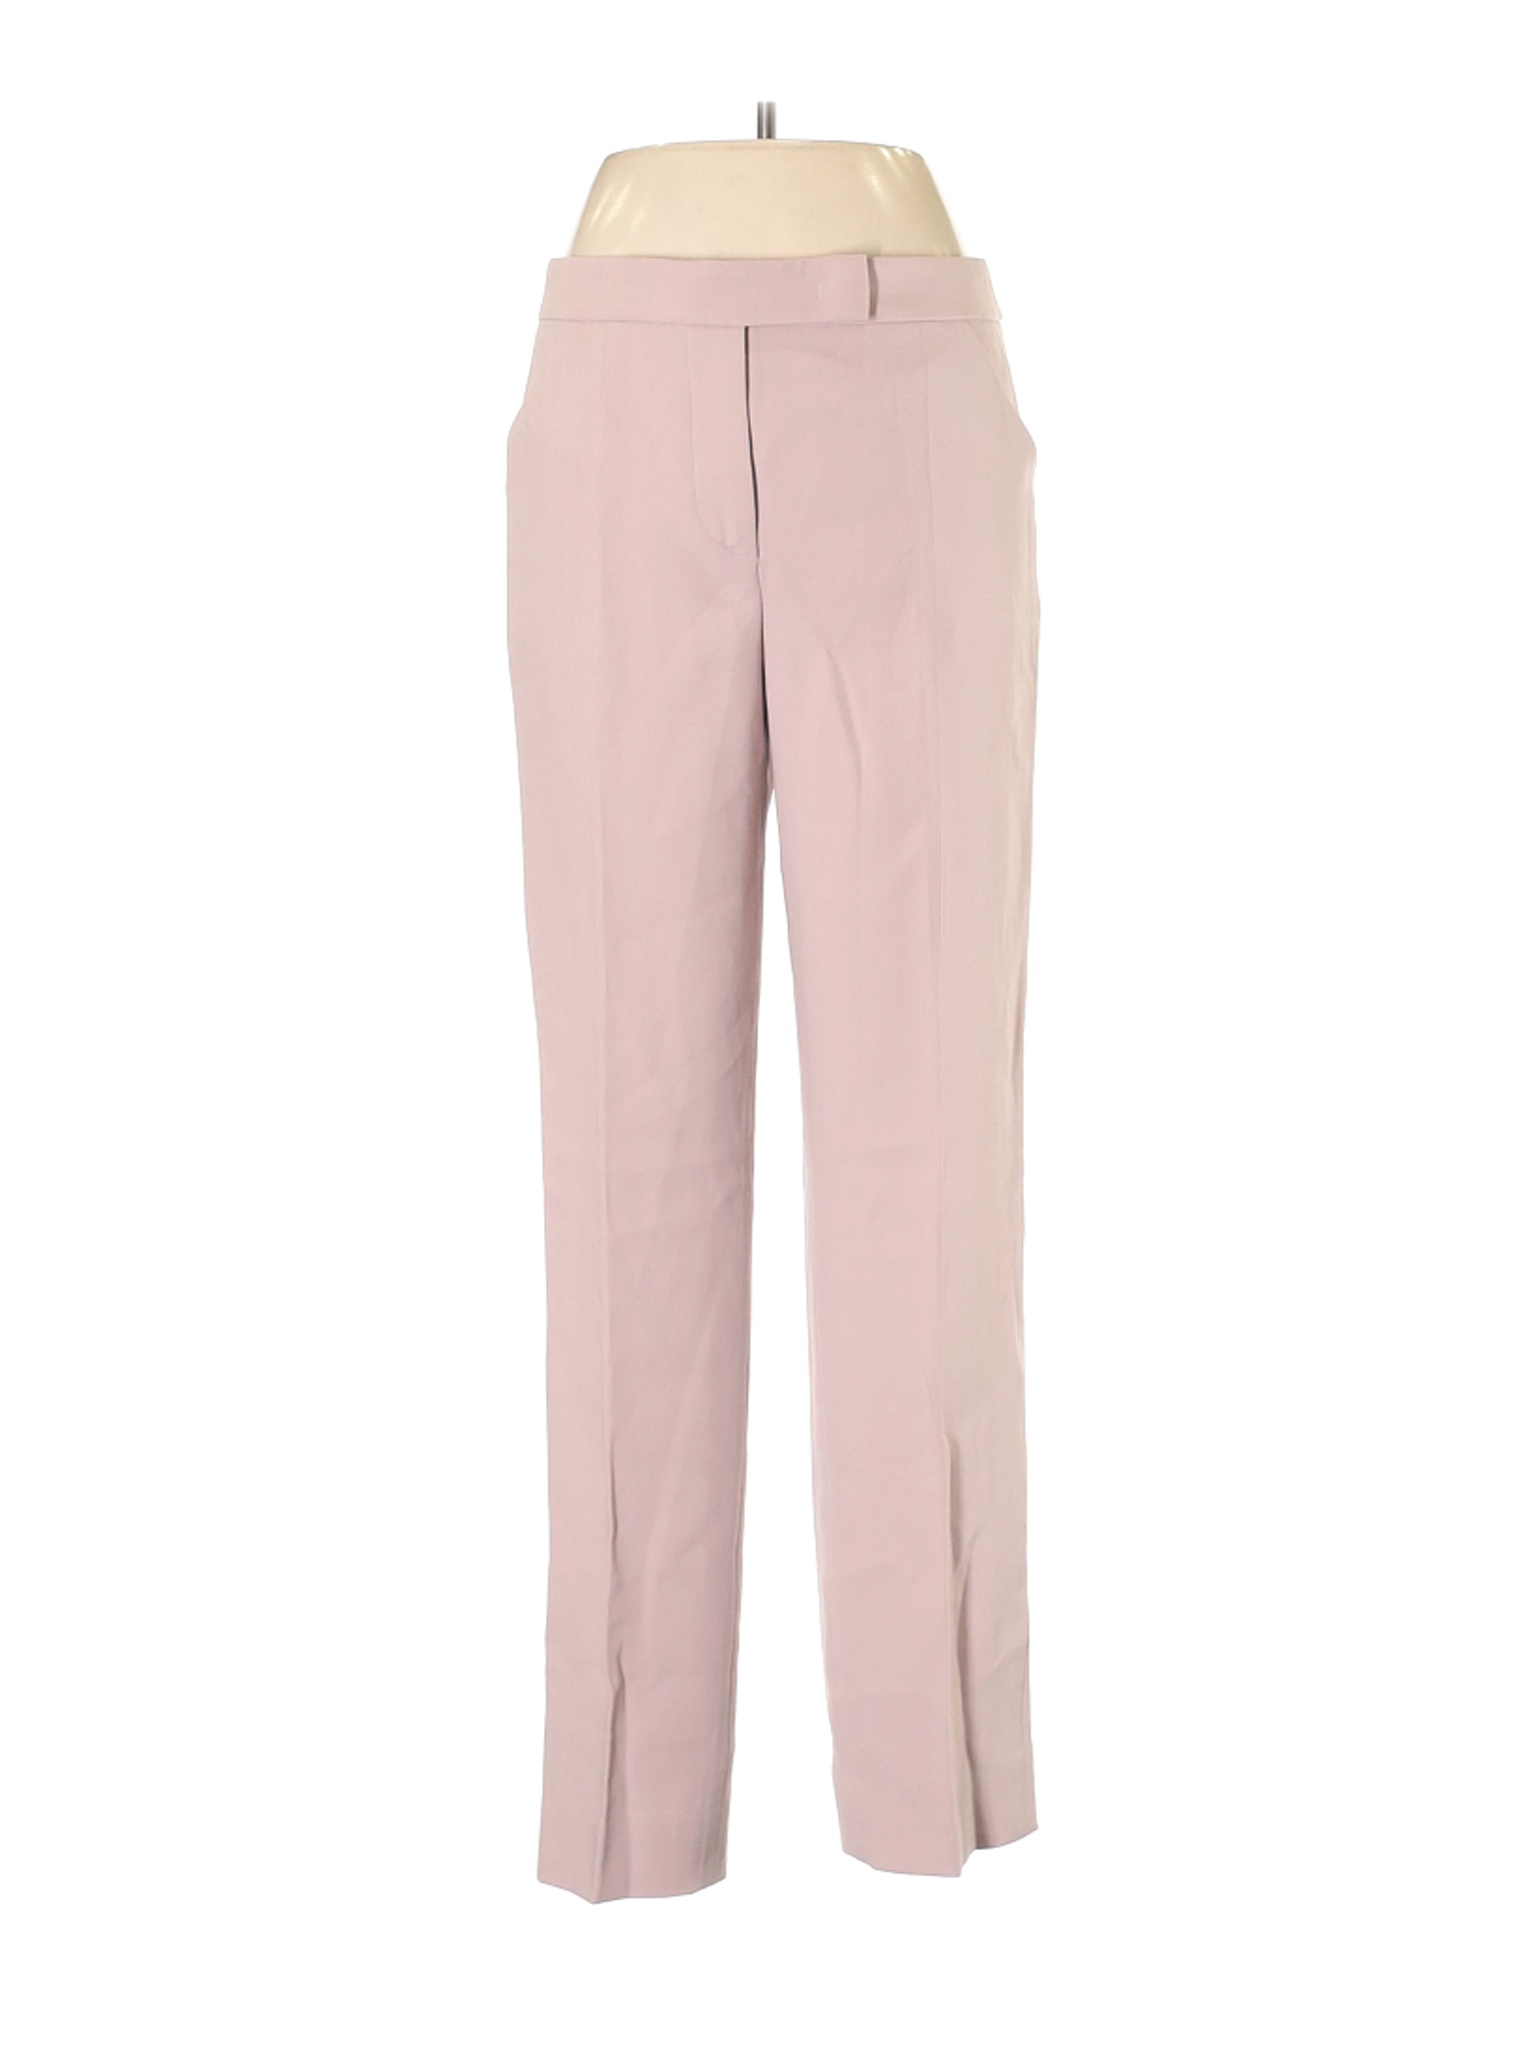 Giorgio Armani Women Pink Wool Pants 44 italian | eBay